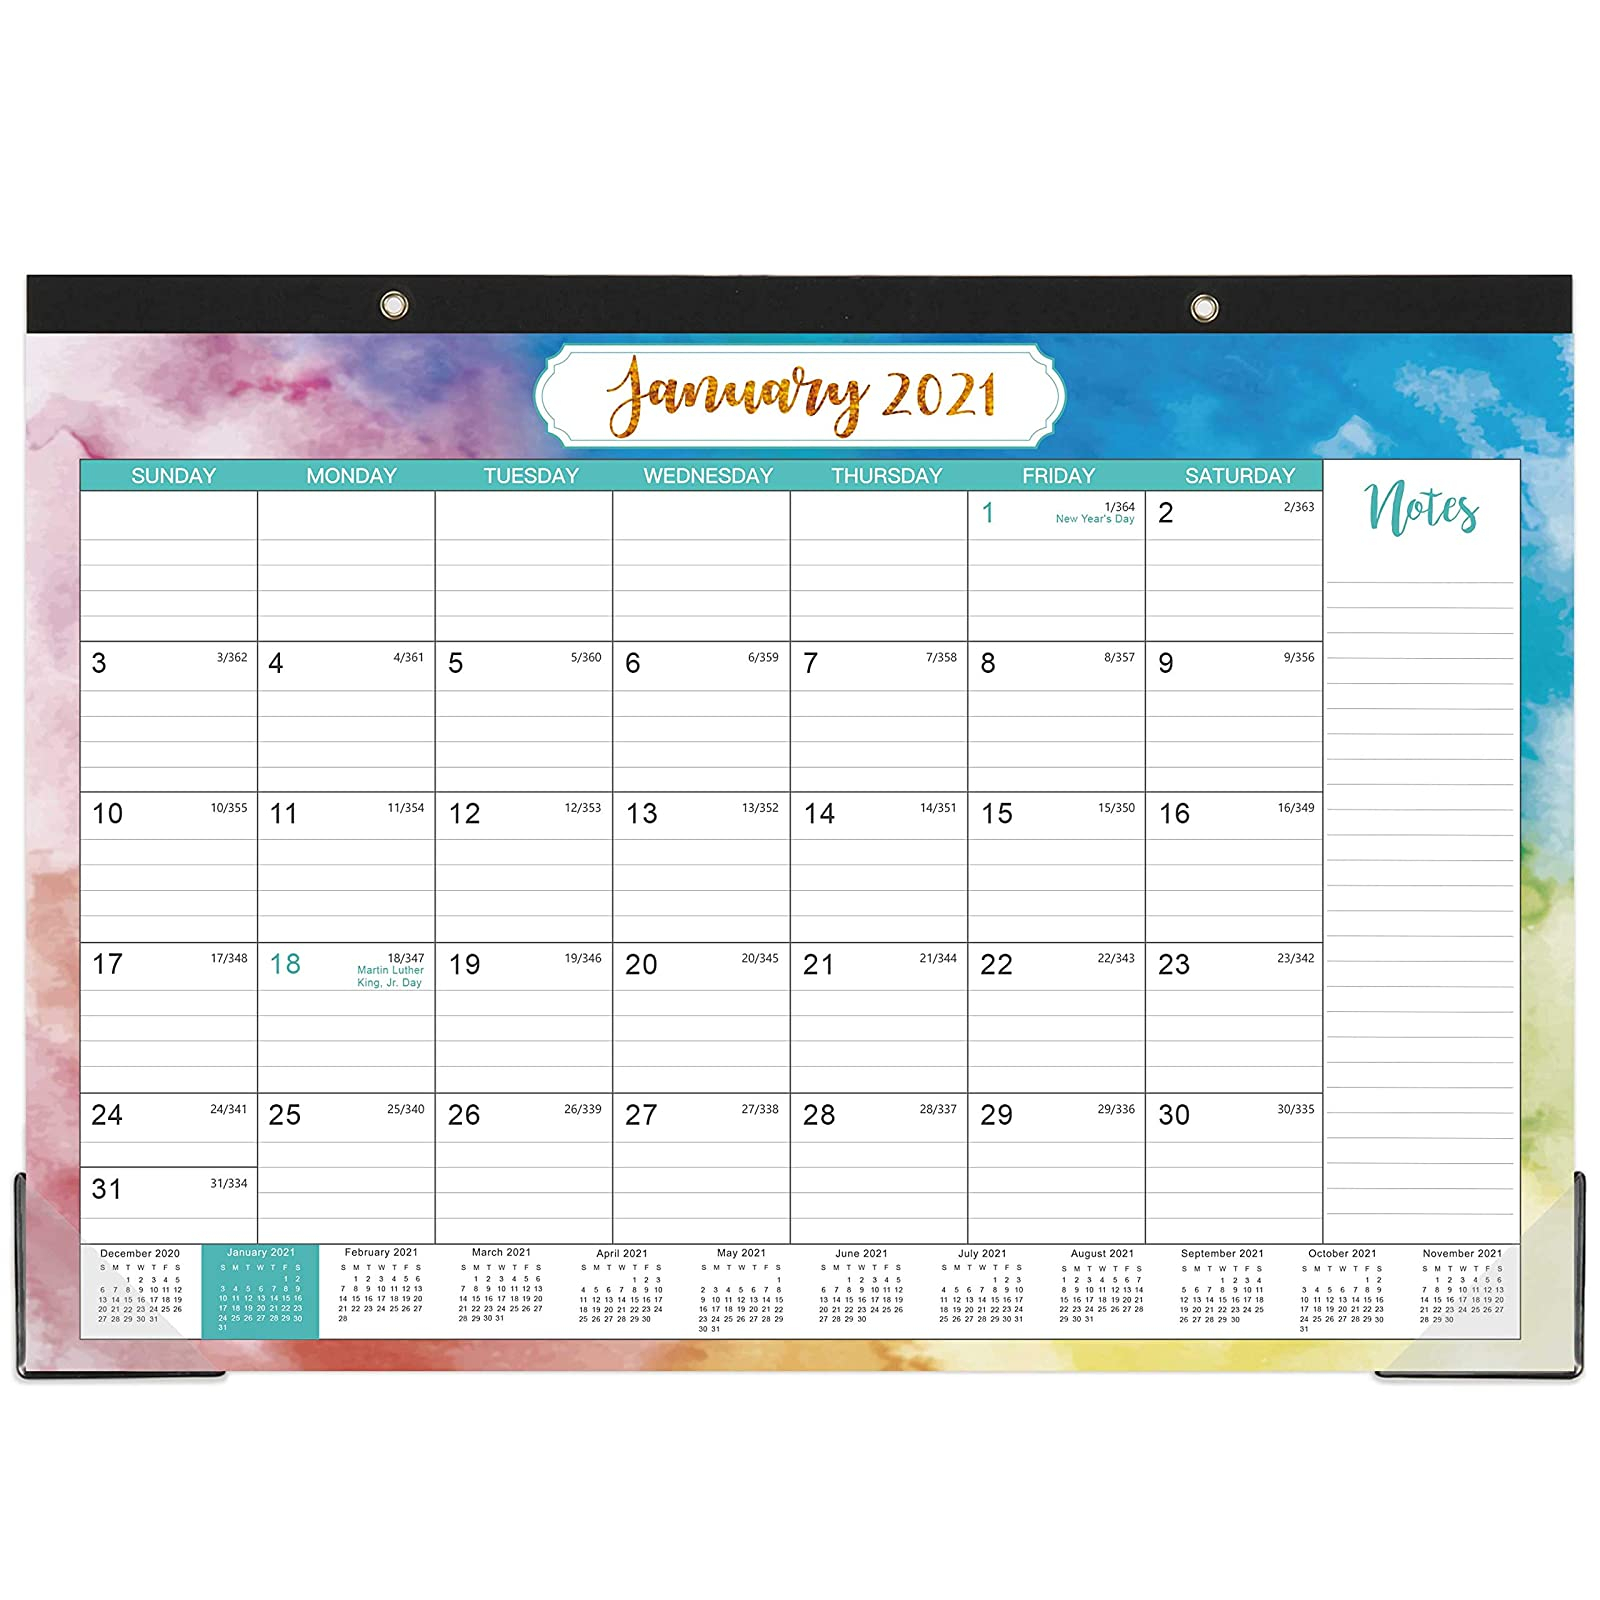 Julian Calendar 2021  Julian Calendar Pdf Calendar For throughout Julian Date Calendar 2021